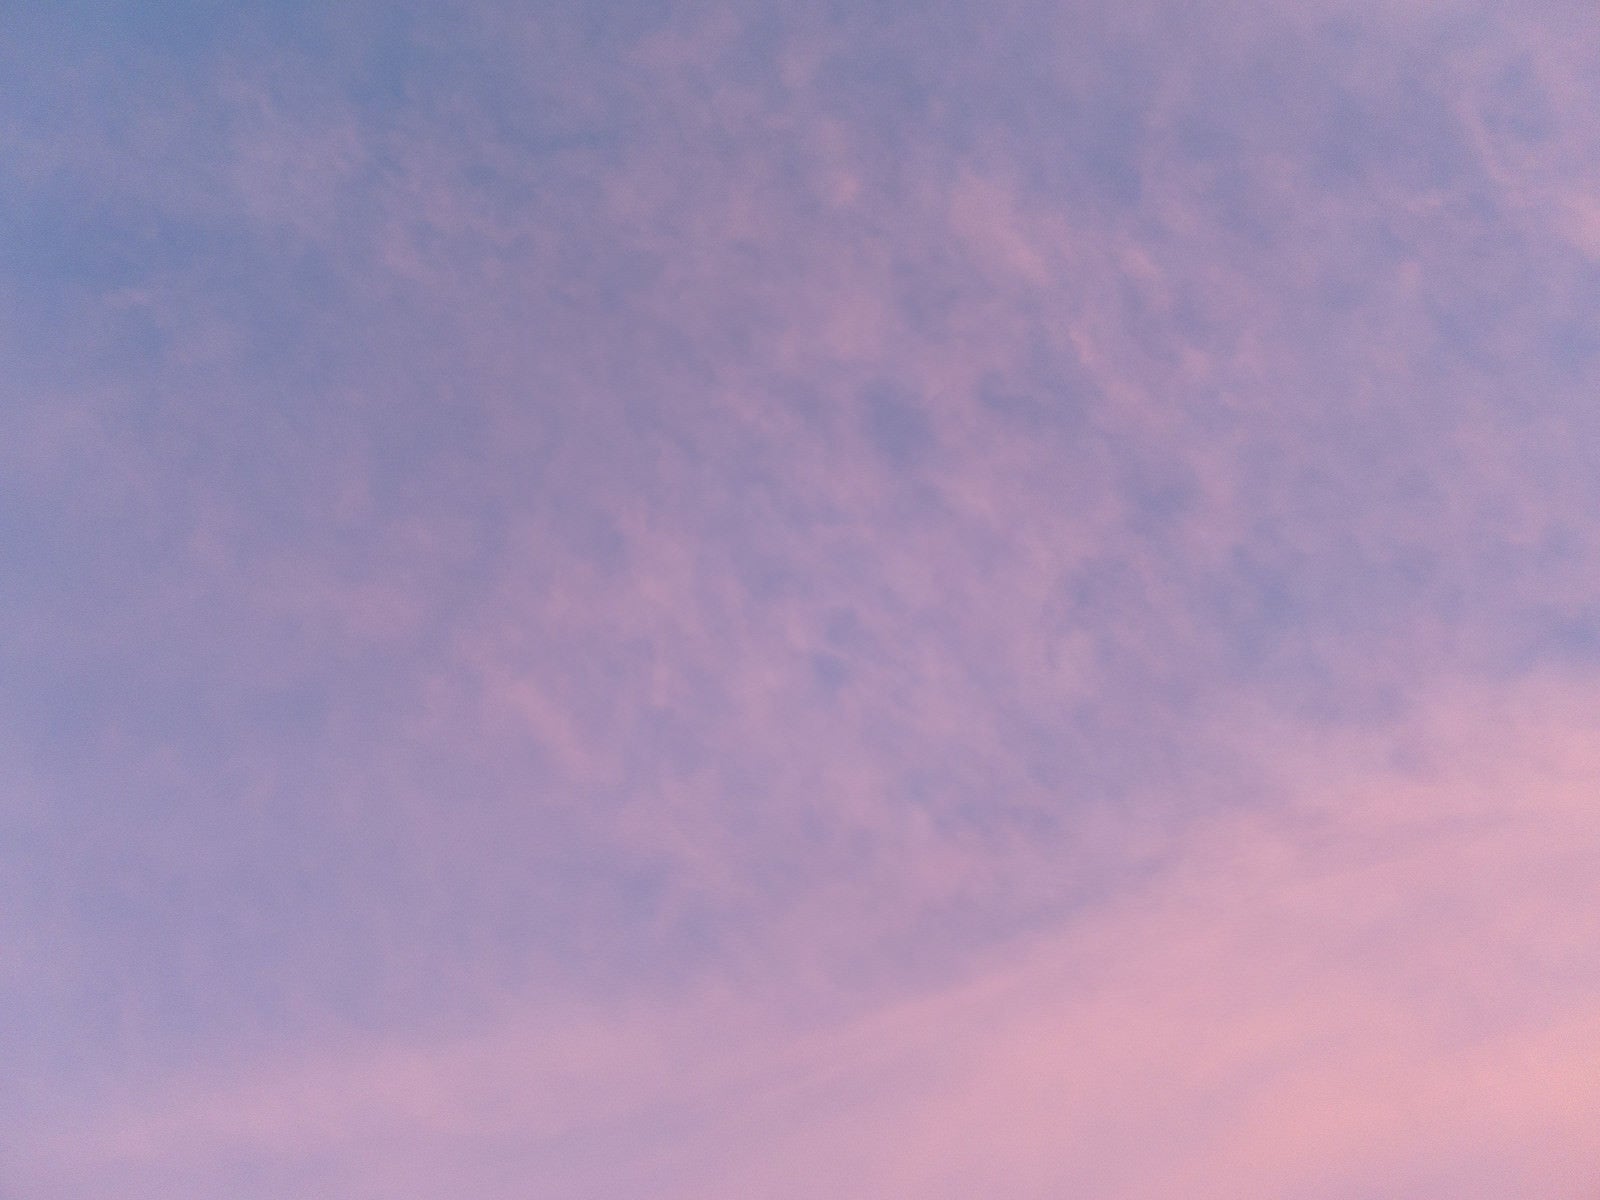 「夕焼け空と薄い雲」の写真